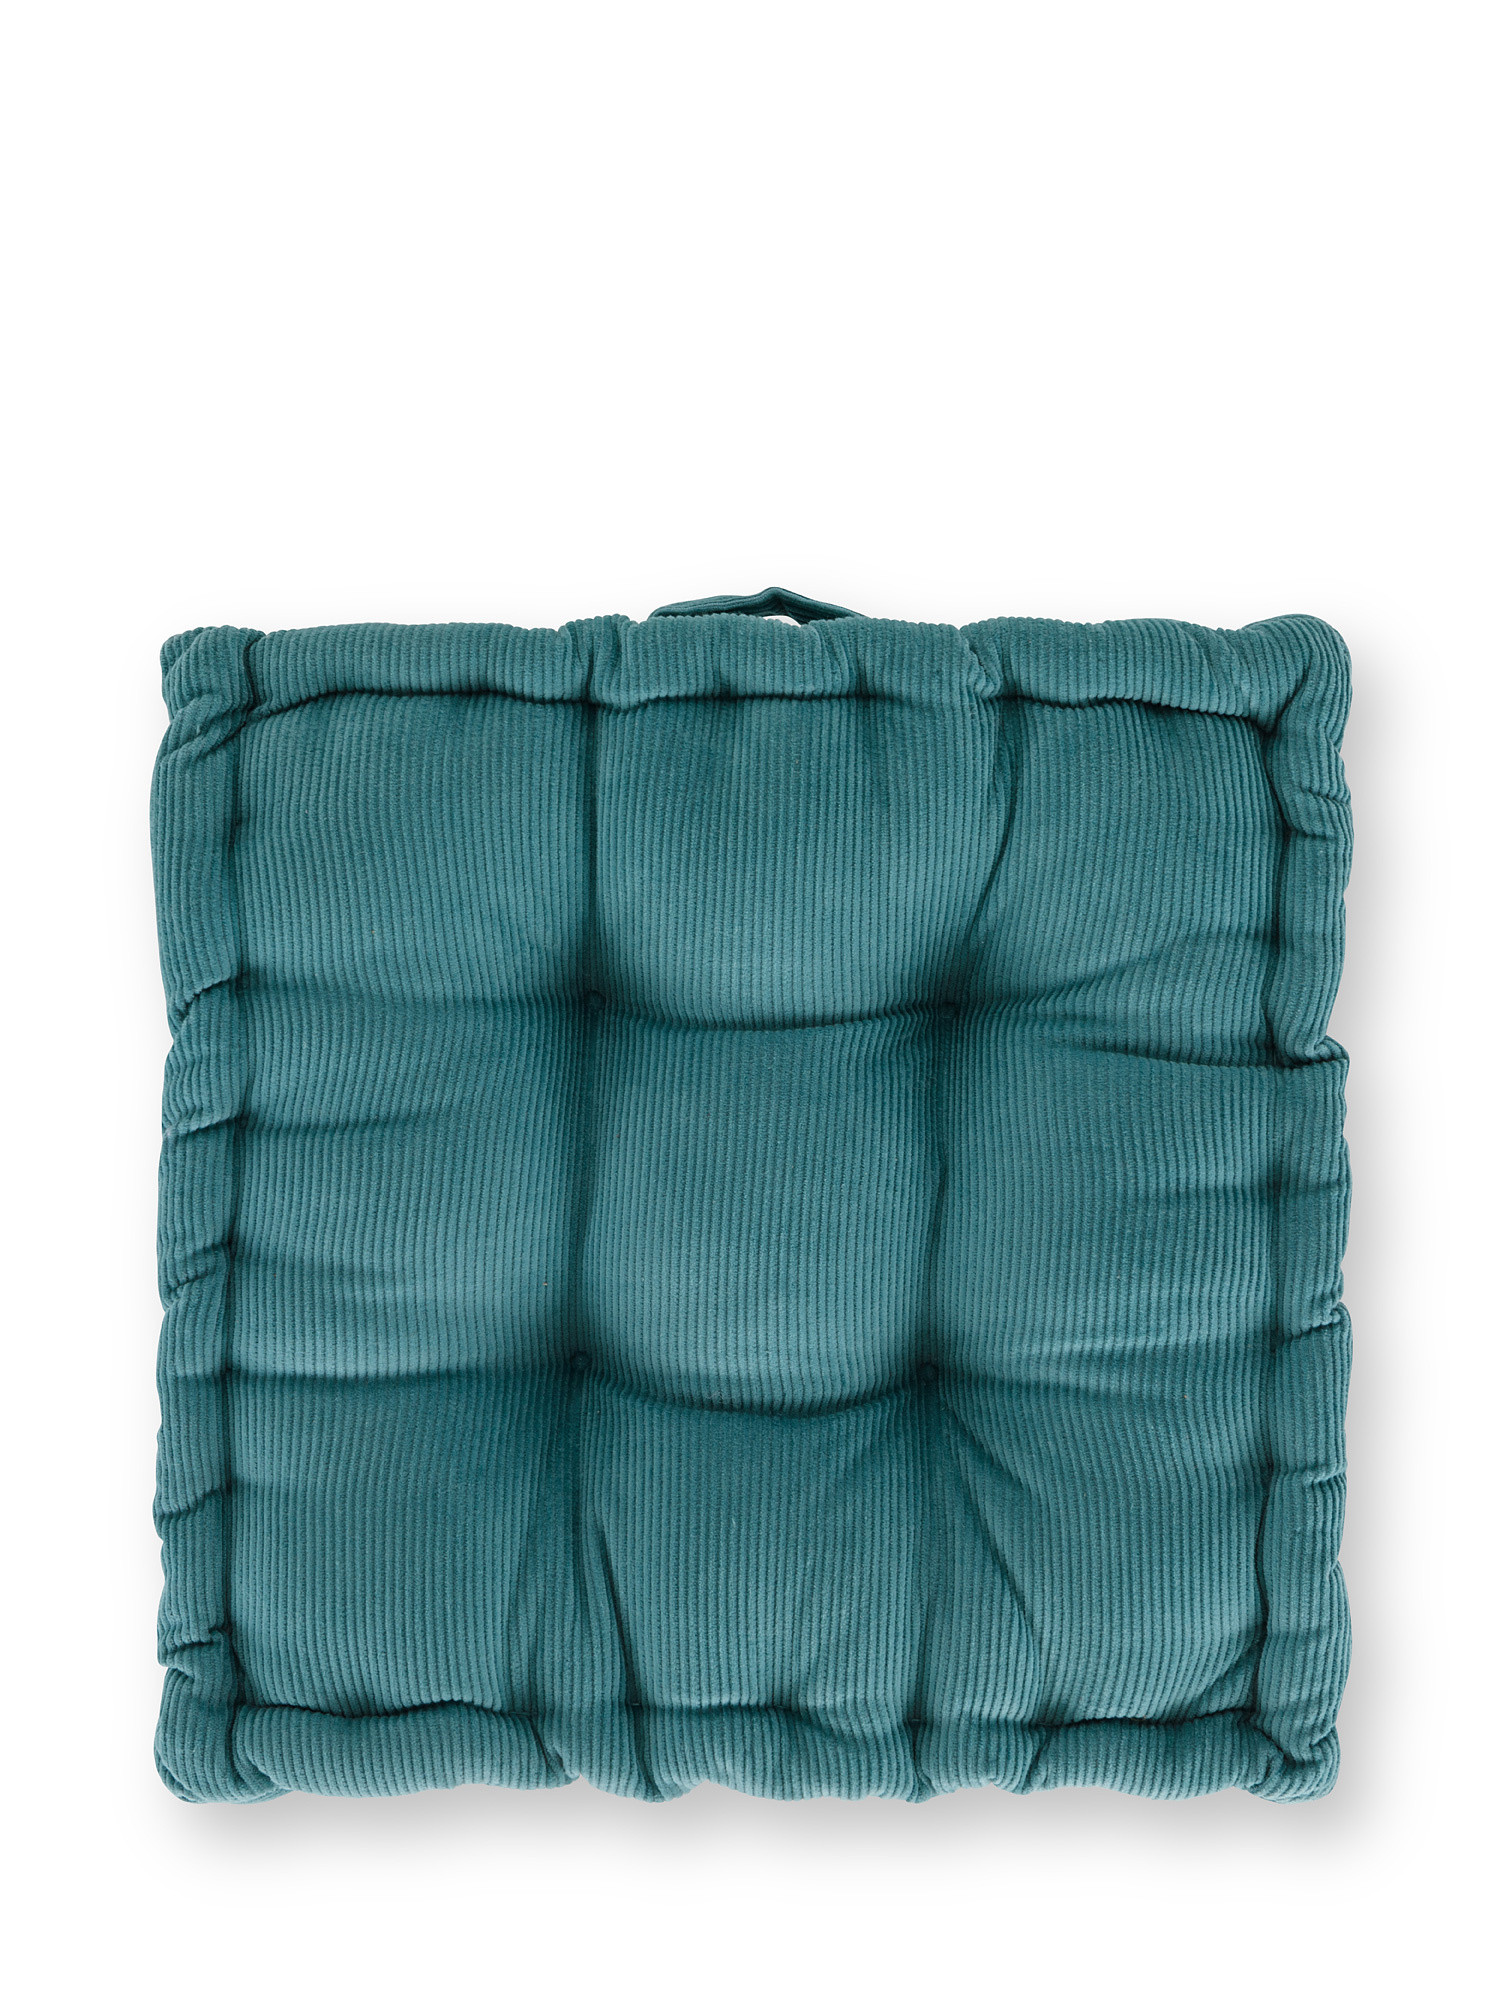 Cuscino materasso velluto tinta unita 40x40cm, Azzurro, large image number 0